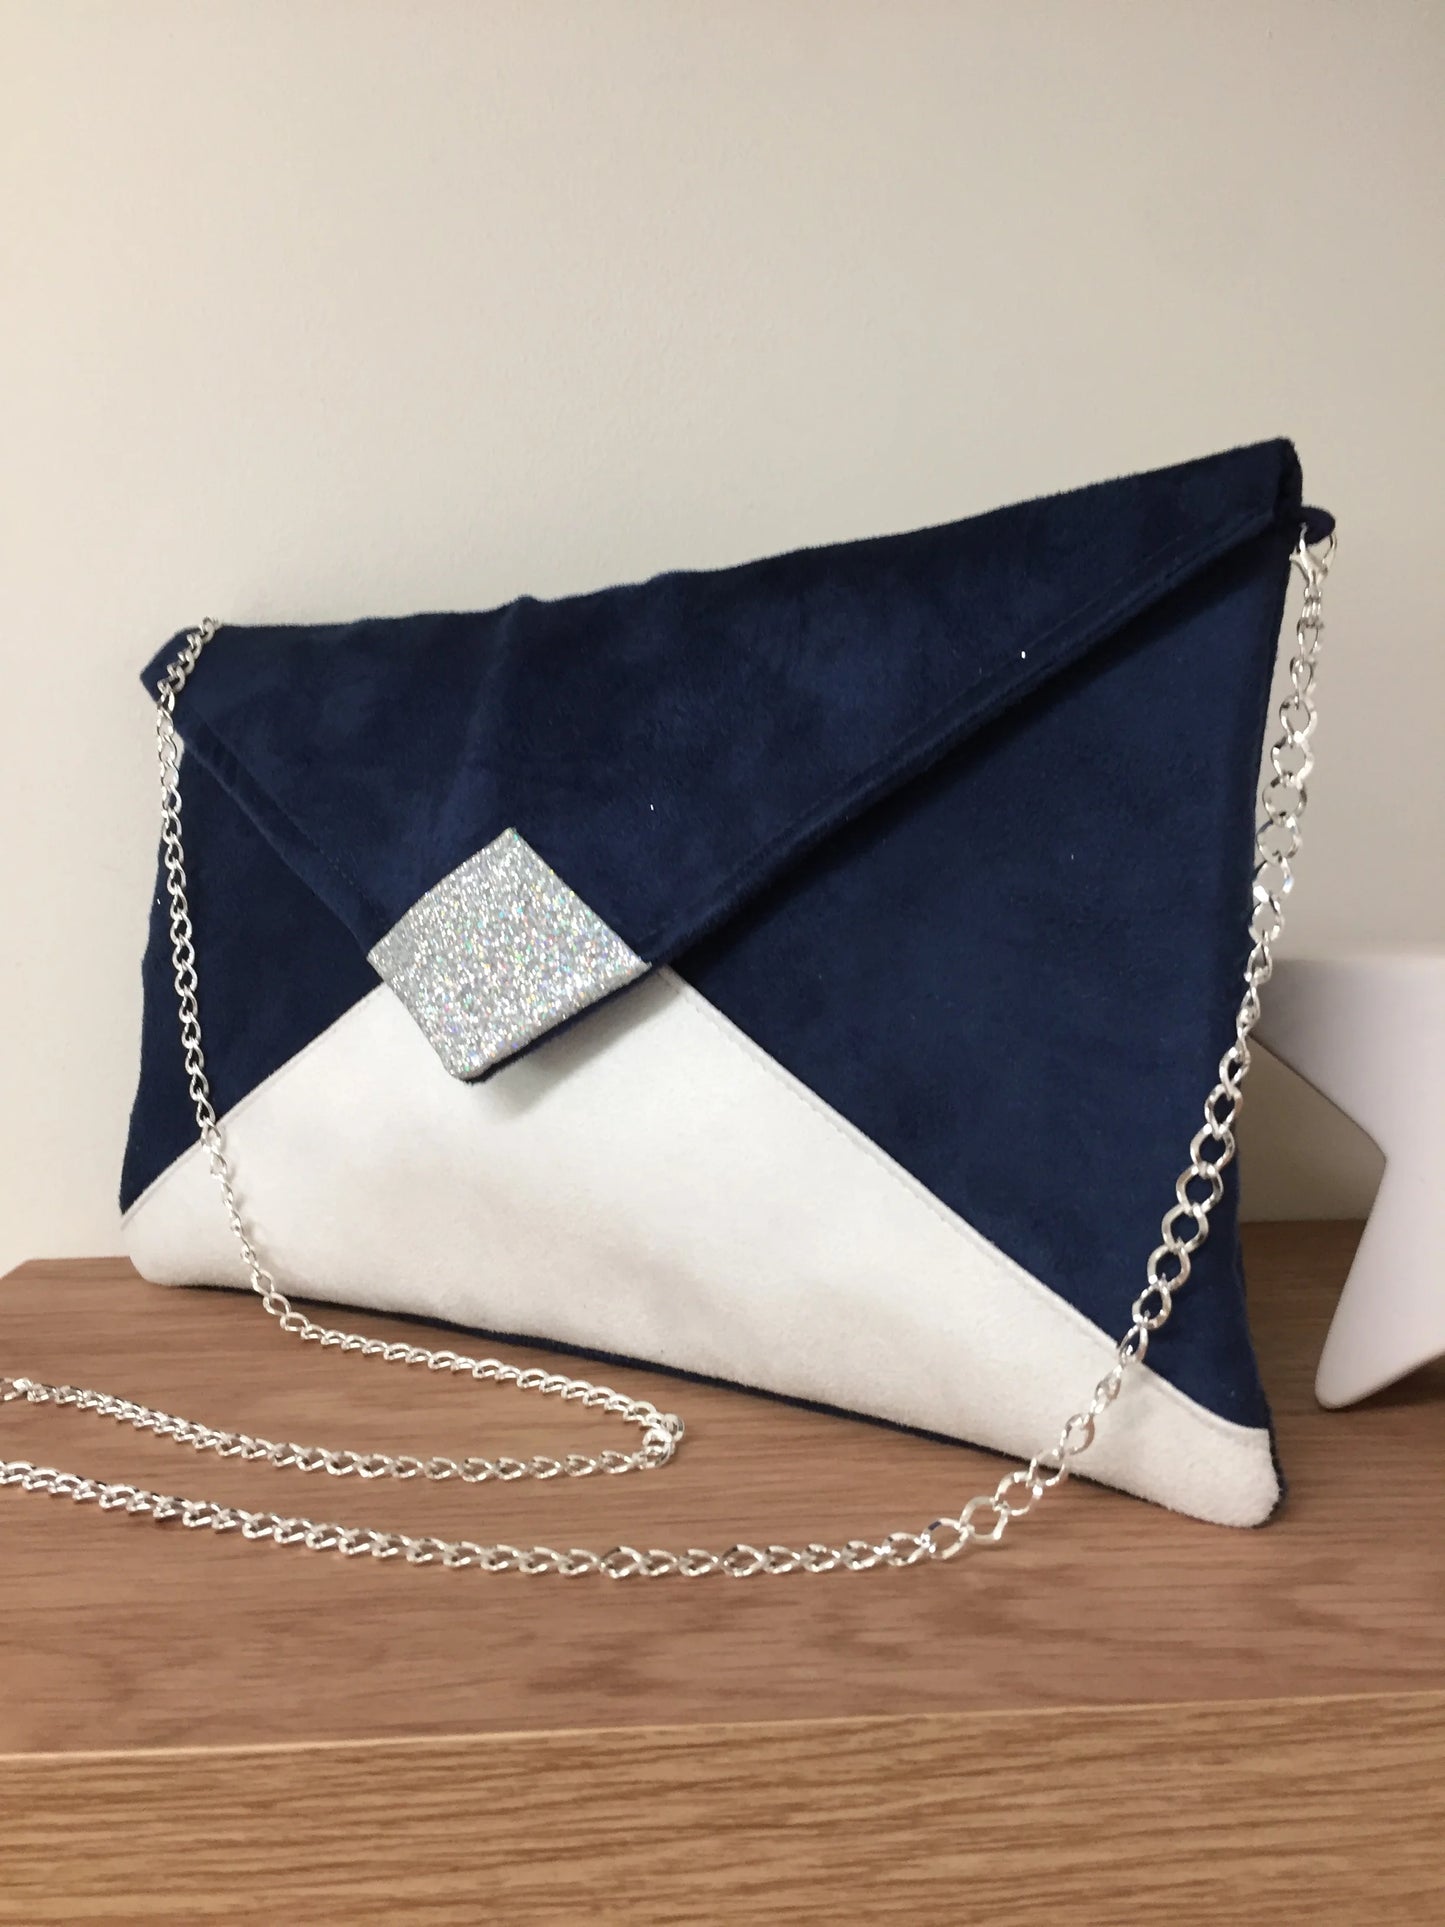 Le sac pochette Isa bleu marine et blanc à paillettes argentées, avec chainette amovible.